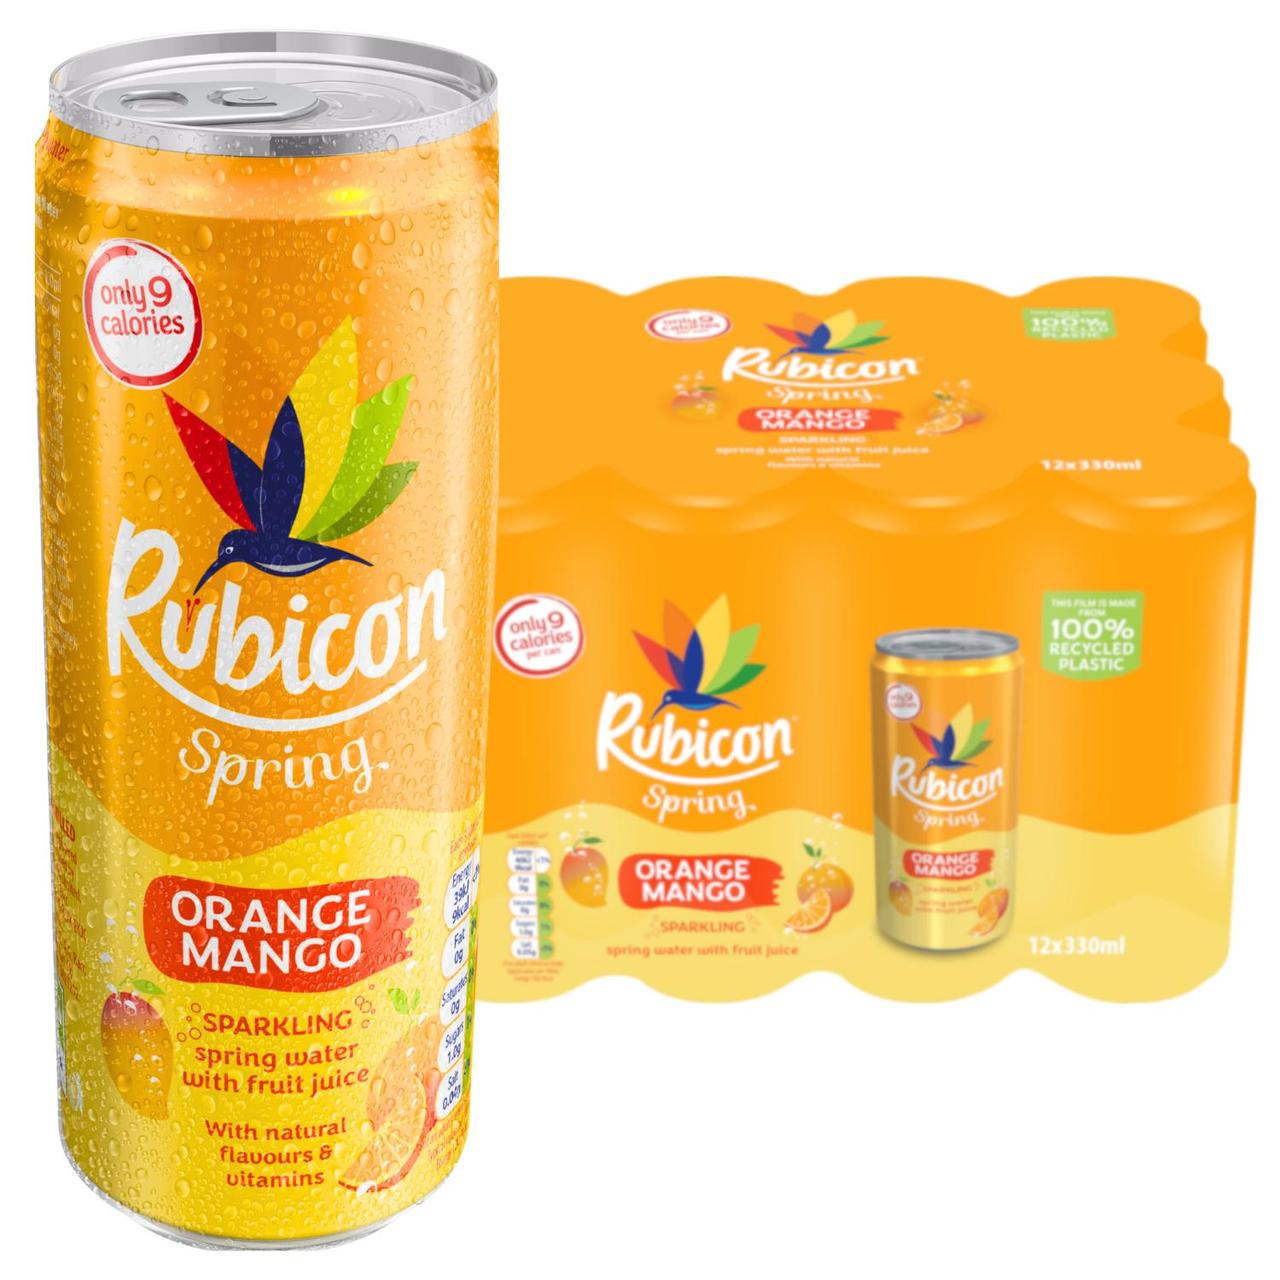 Rubicon Spring Orange Mango 12x330ml